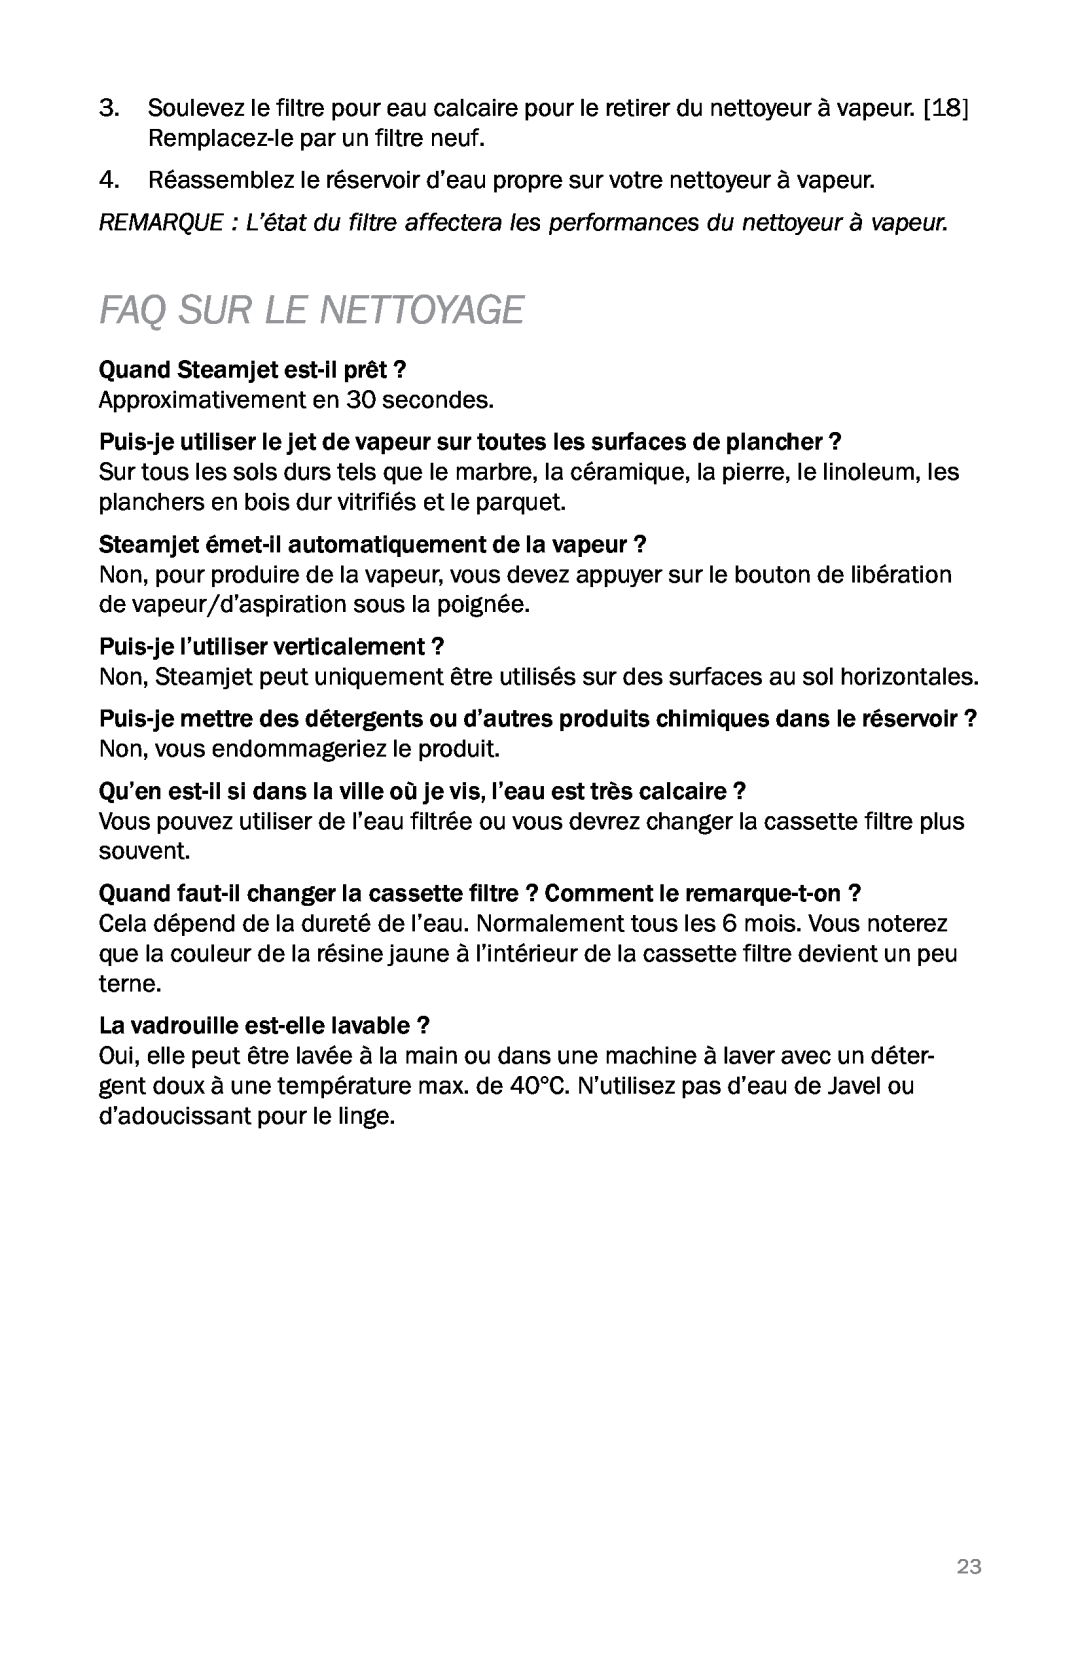 Reliable PROT3 instruction manual Faq Sur Le Nettoyage 